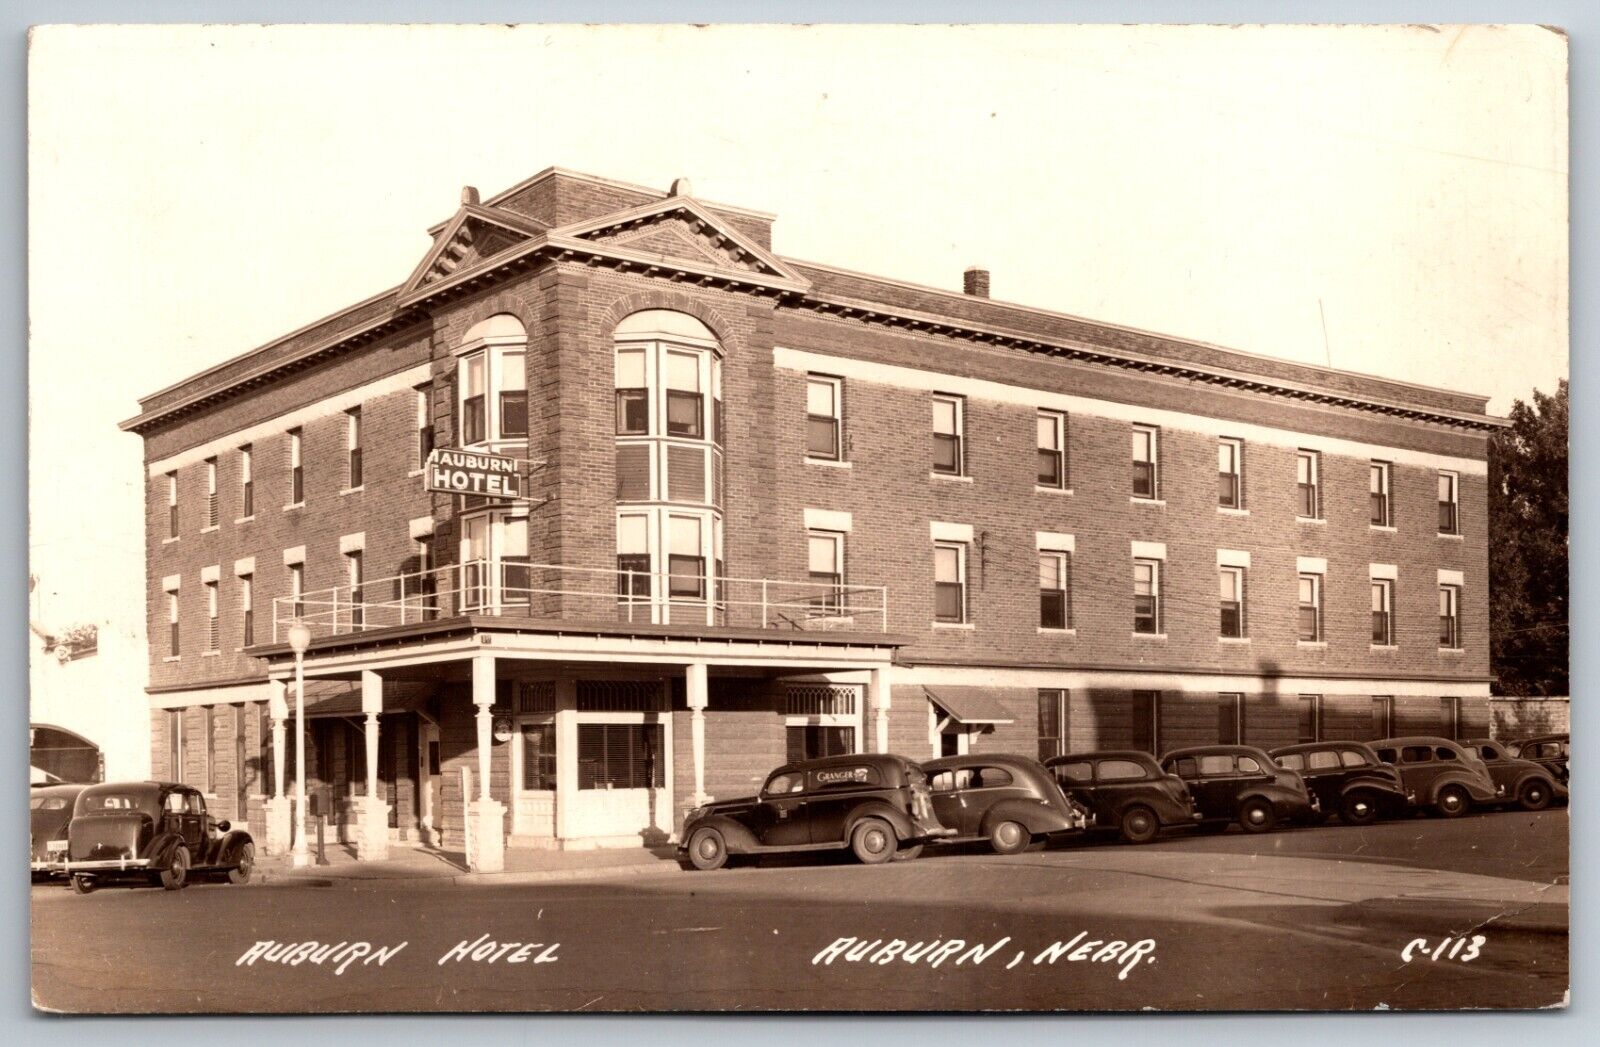 Auburn Hotel Nebraska Street View Old Cars Granger Posted 1943 RPPC Postcard